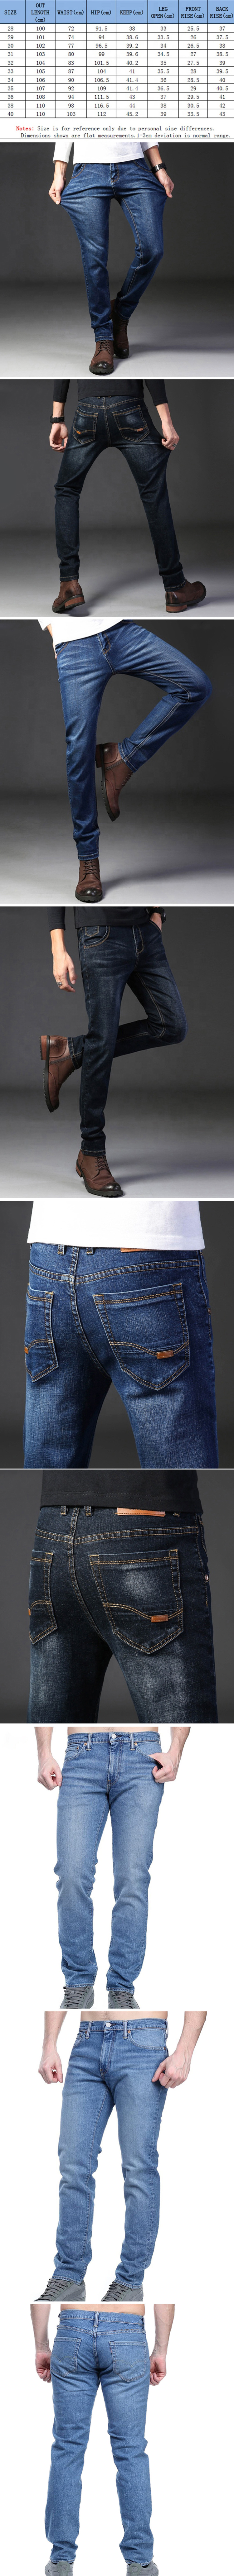 Rustler 87623CB Men's Jeans Pants 36 x 32 Black | eBay